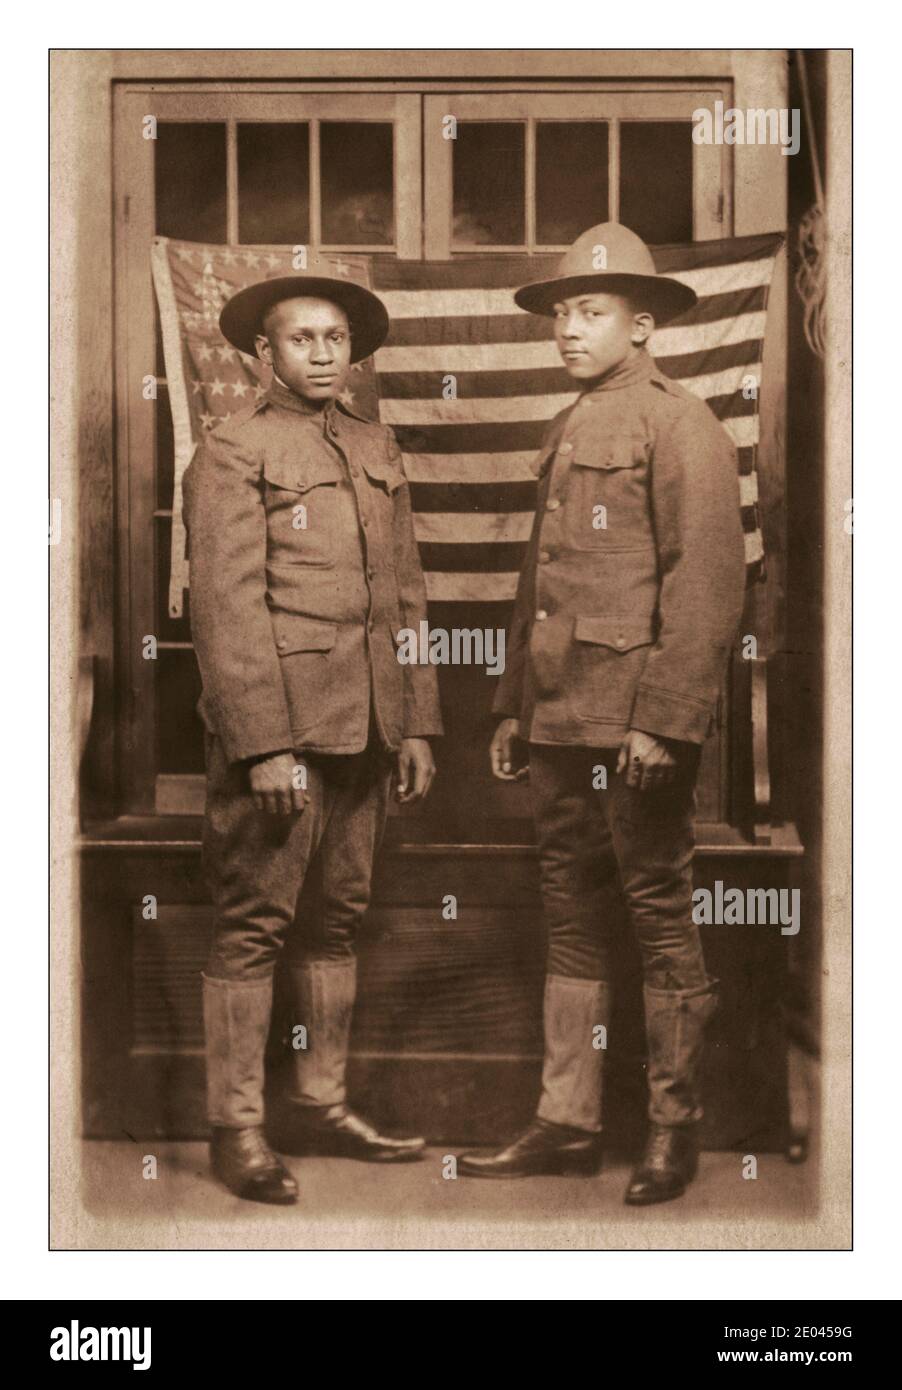 WW1 Propaganda Foto che mostra il contributo nero afroamericani ha dato alla prima guerra mondiale. Due soldati afroamericani non identificati in divise e cappelli da campagna in piedi davanti alla bandiera americana WW1 1918 [tra il 1917 e il 1918]. Stati Uniti.--Esercito--persone--1910-1920 Guerra Mondiale, 1914-1918--personale militare--Americani africani Americani americani--Servizio militare--1910-1920 - soldati--Americani--1910-1920 uniformi militari--Americani--1910-1920 Bandiere--American--1910-1920 Ritratti di Gruppo--1910-1920. Cartoline fotografiche--1910-1920. Stampe fotografiche--1910-1920. Ritratti Foto Stock